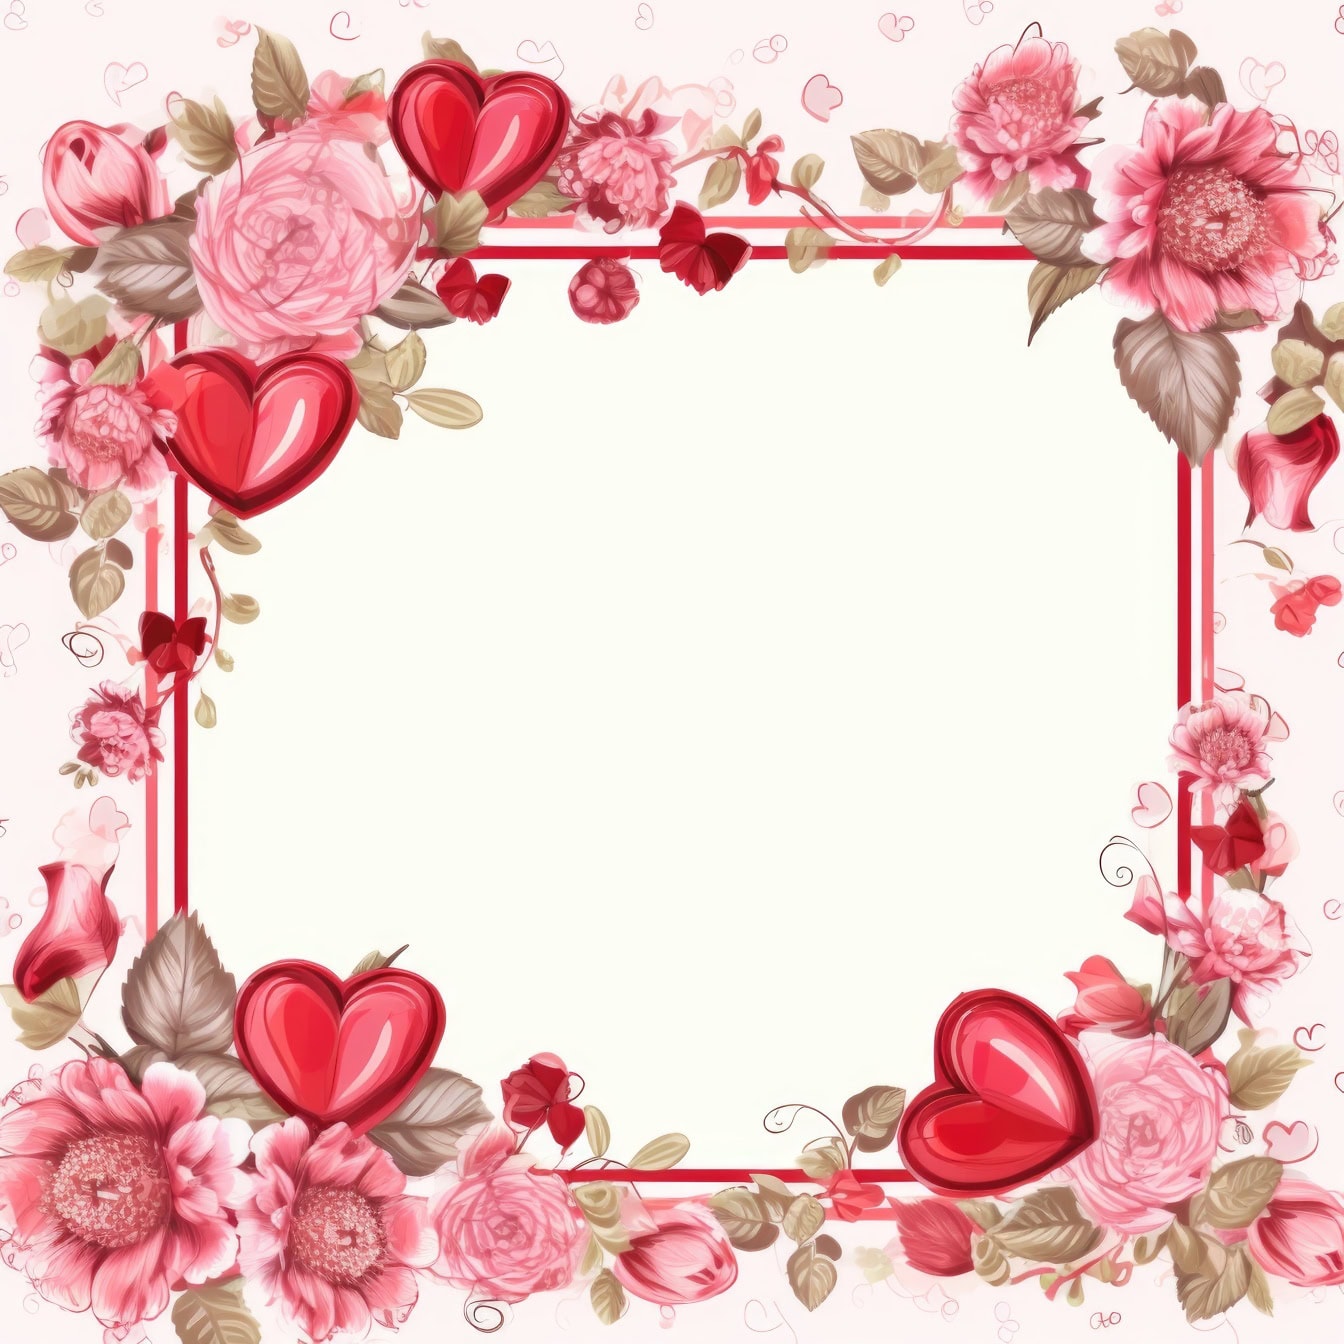 Pembe çiçekler ve kalpler ile kare çerçeveli romantik tebrik kartı